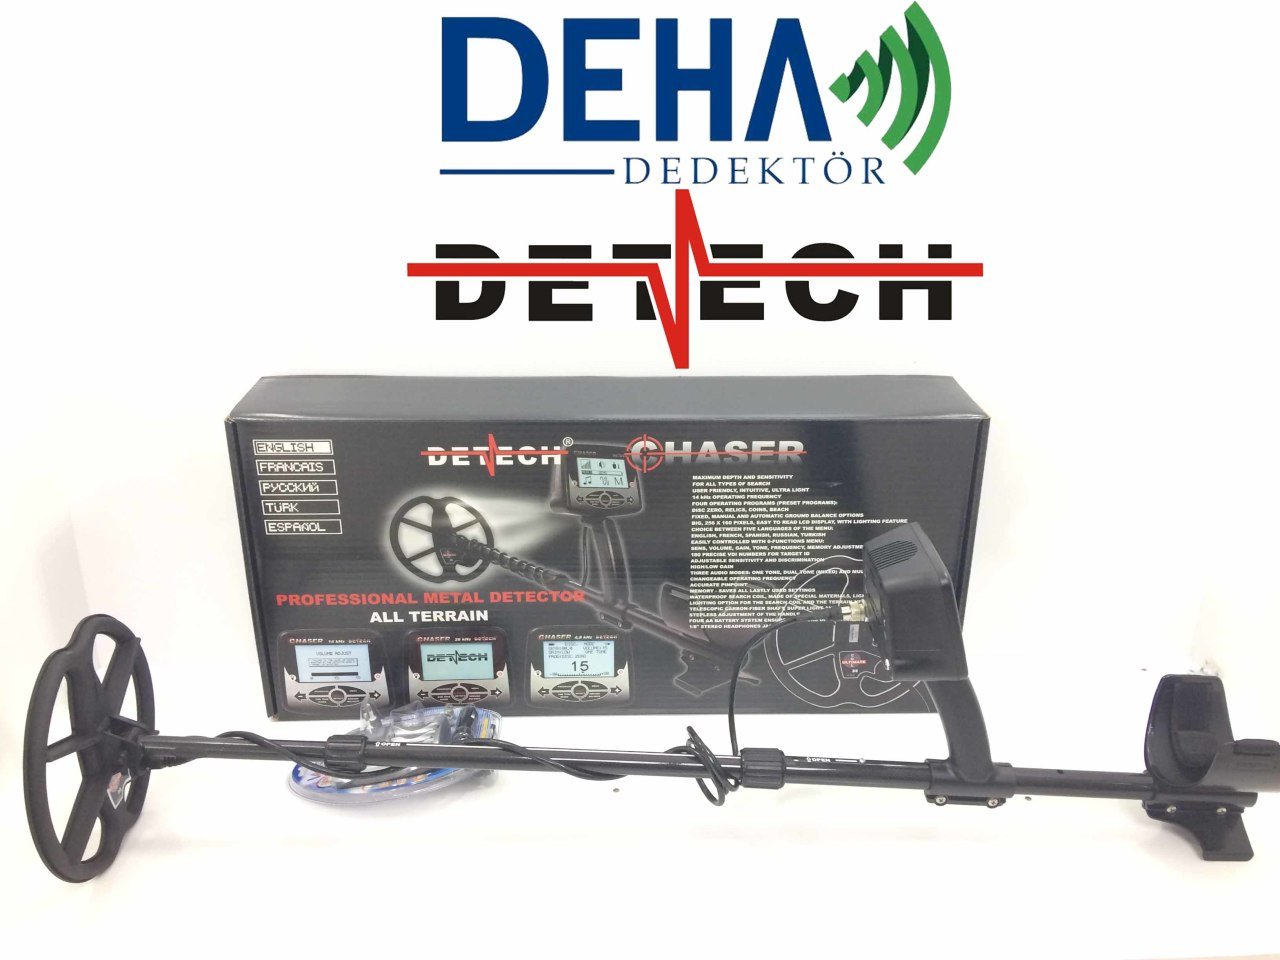 Detech Chaser 14 kHz Define Dedektörü